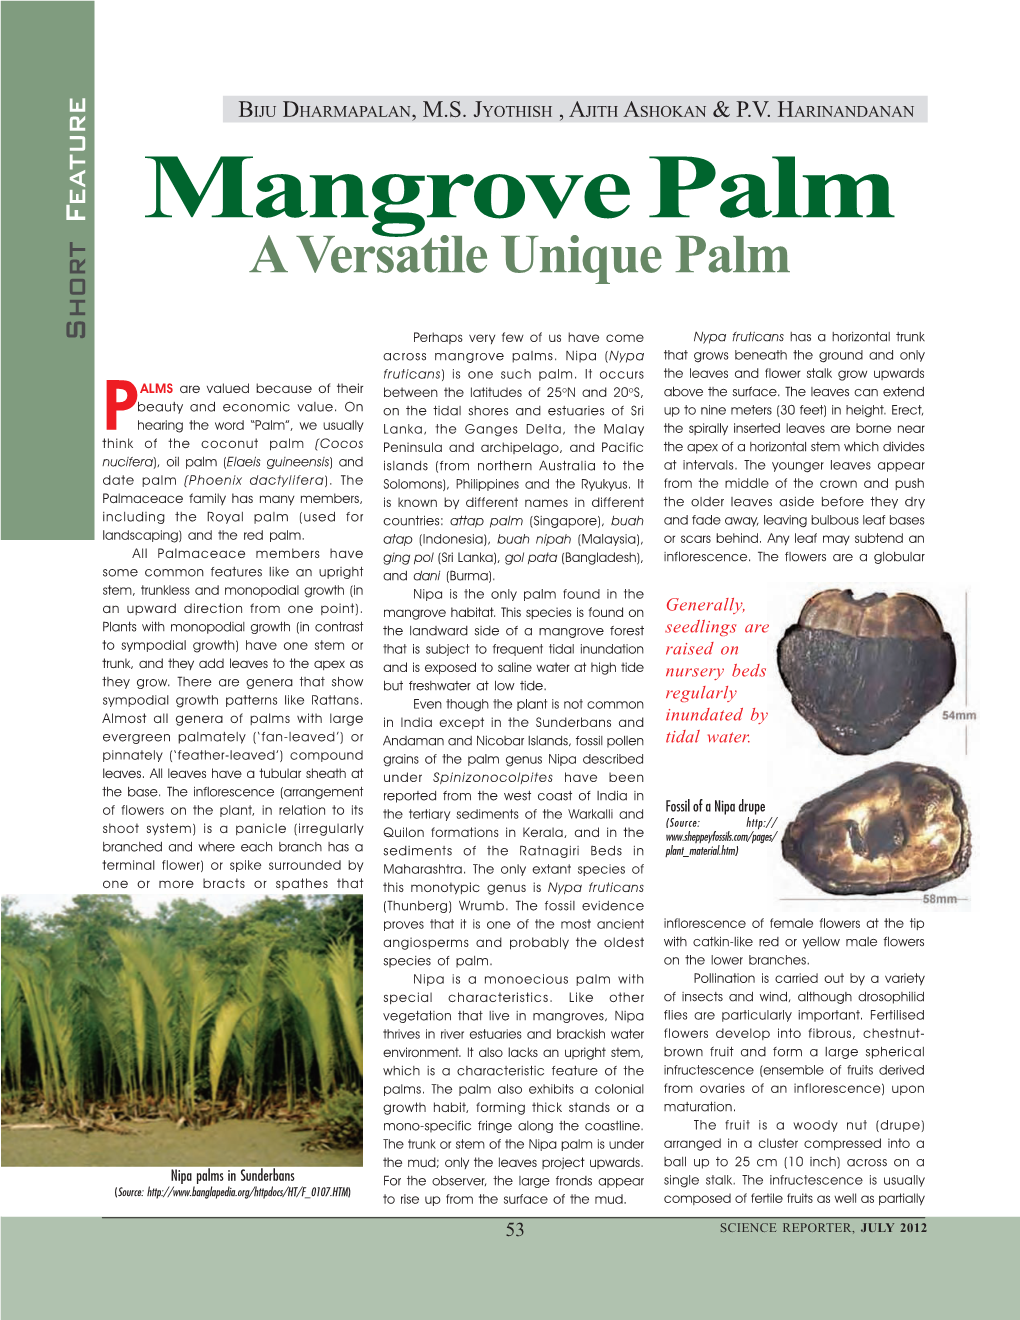 Mangrove Palm a Versatile Unique Palm